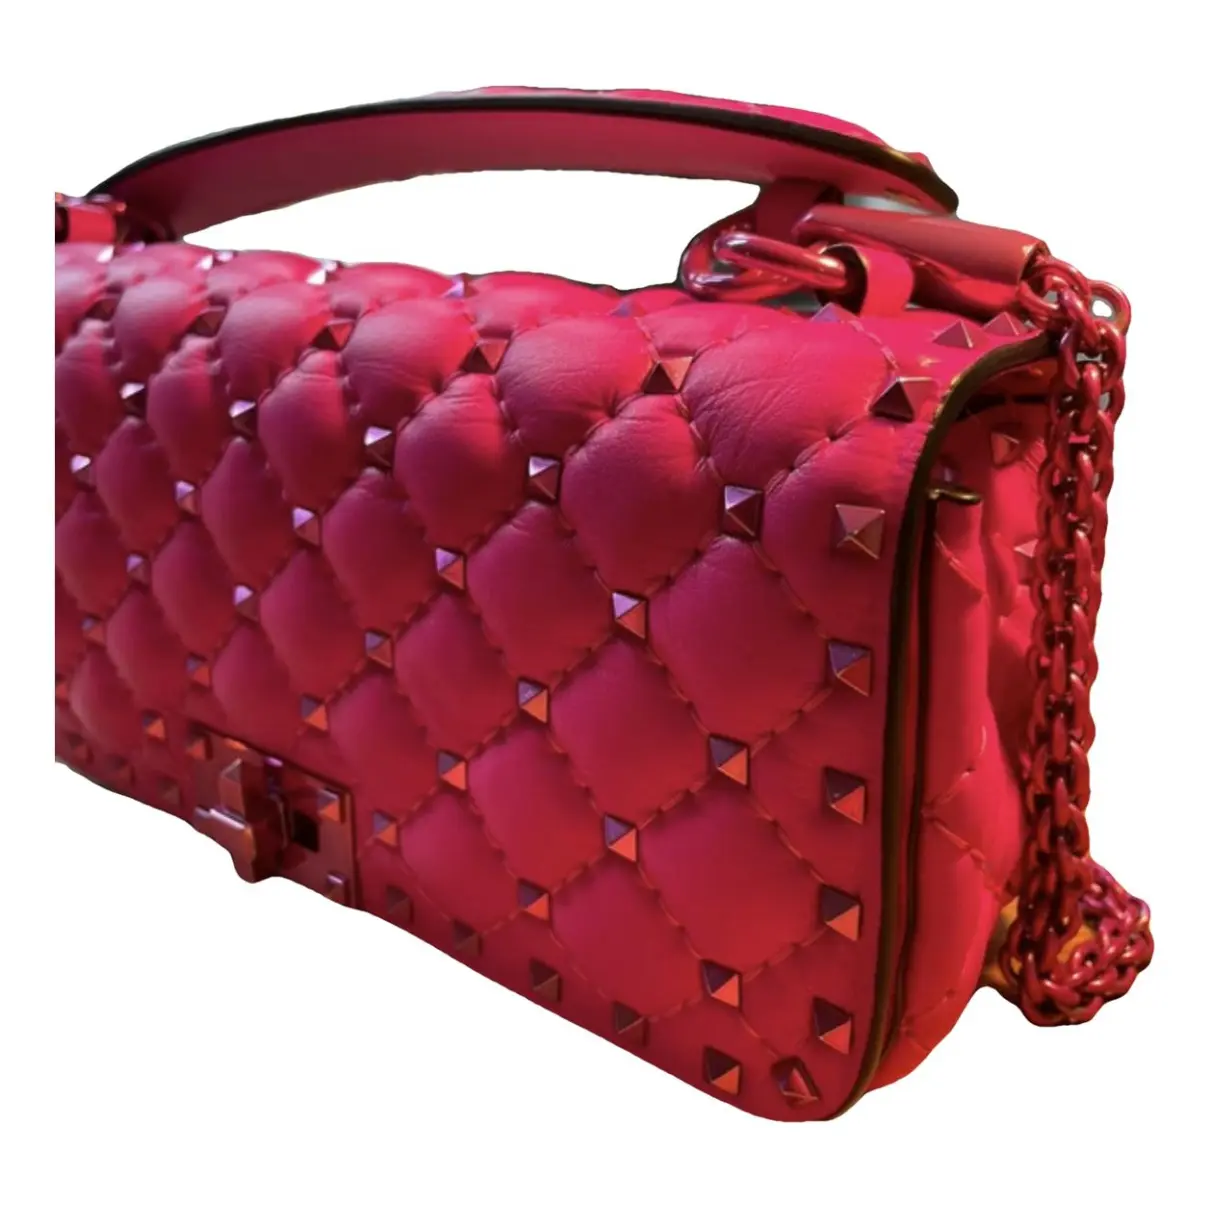 Rockstud spike leather handbag